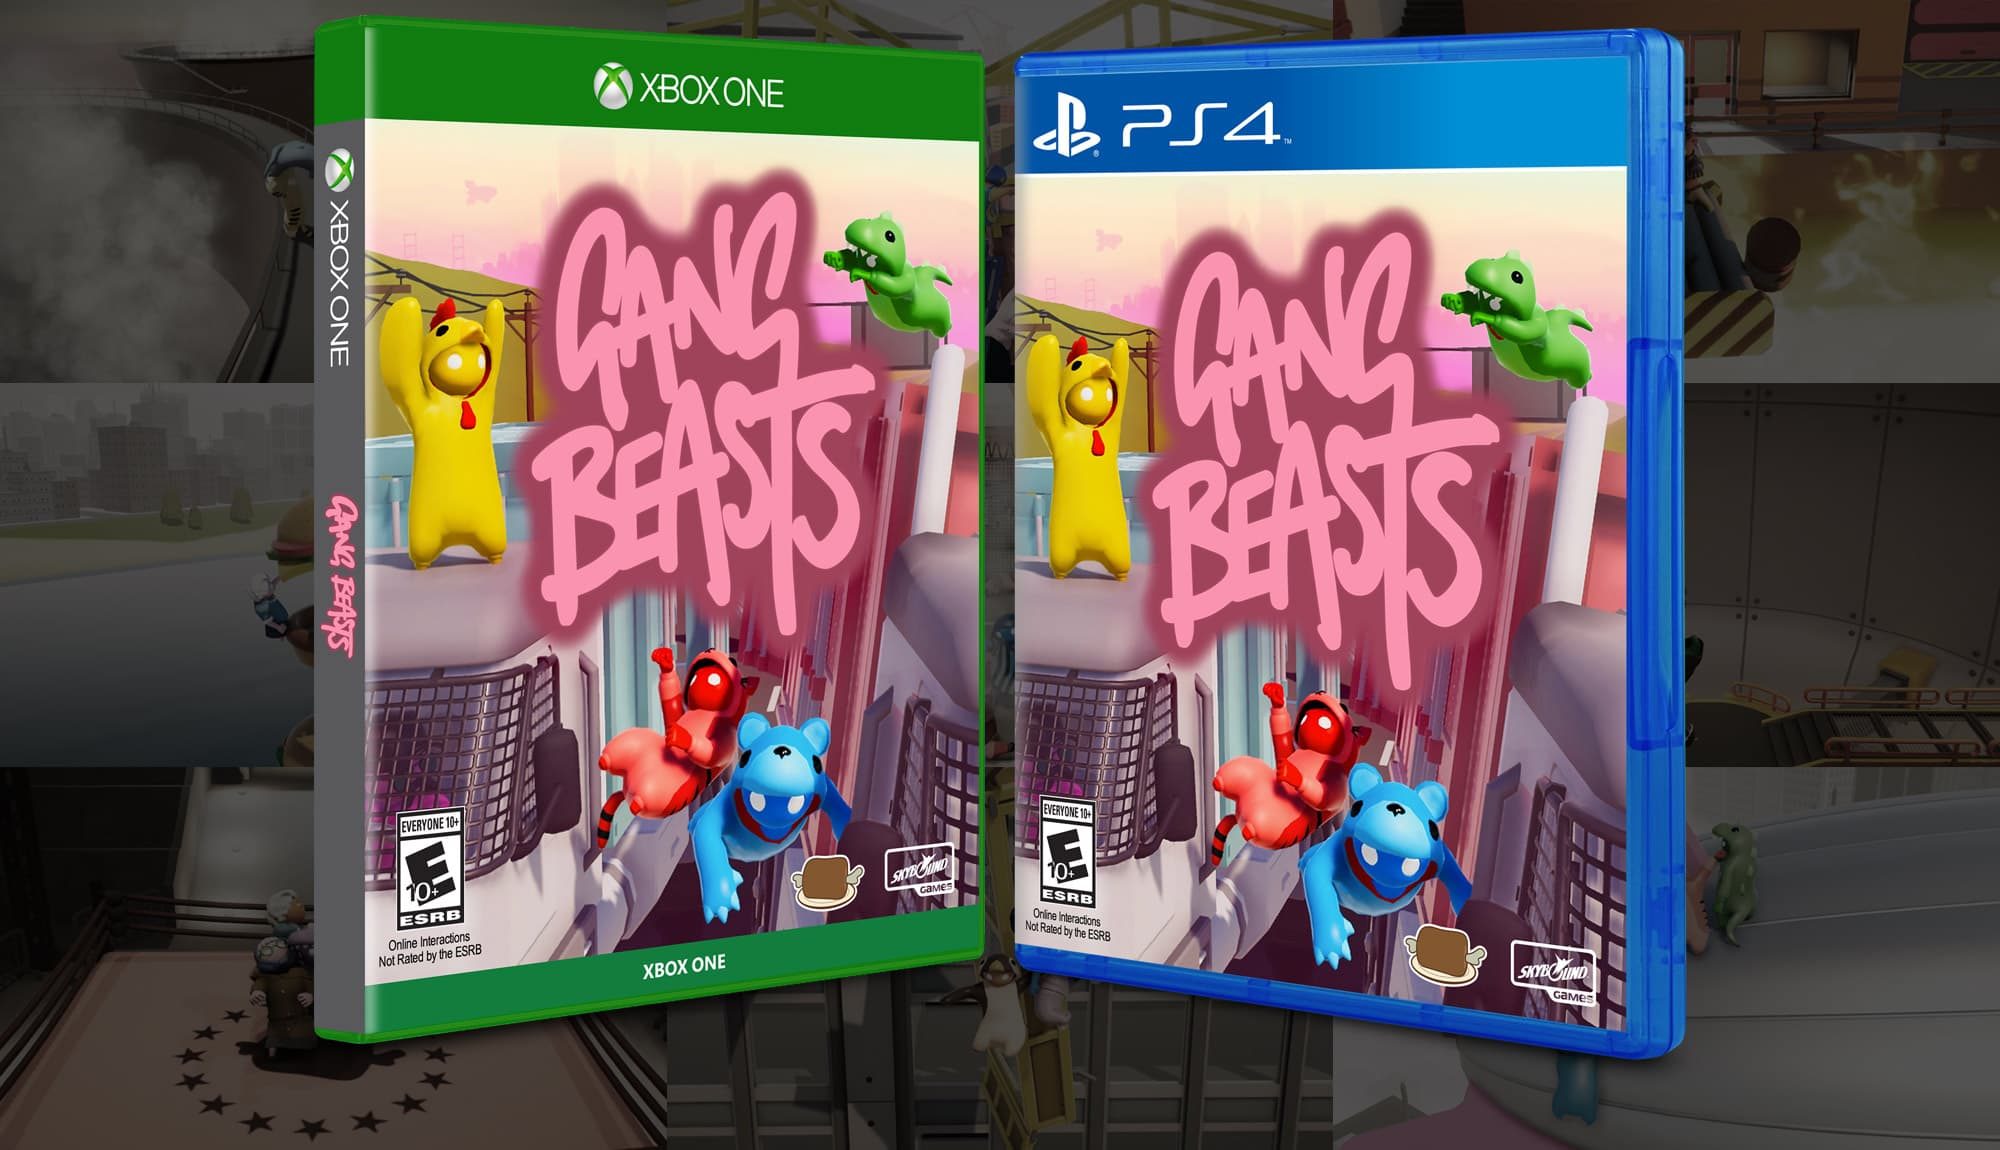 game beast xbox one